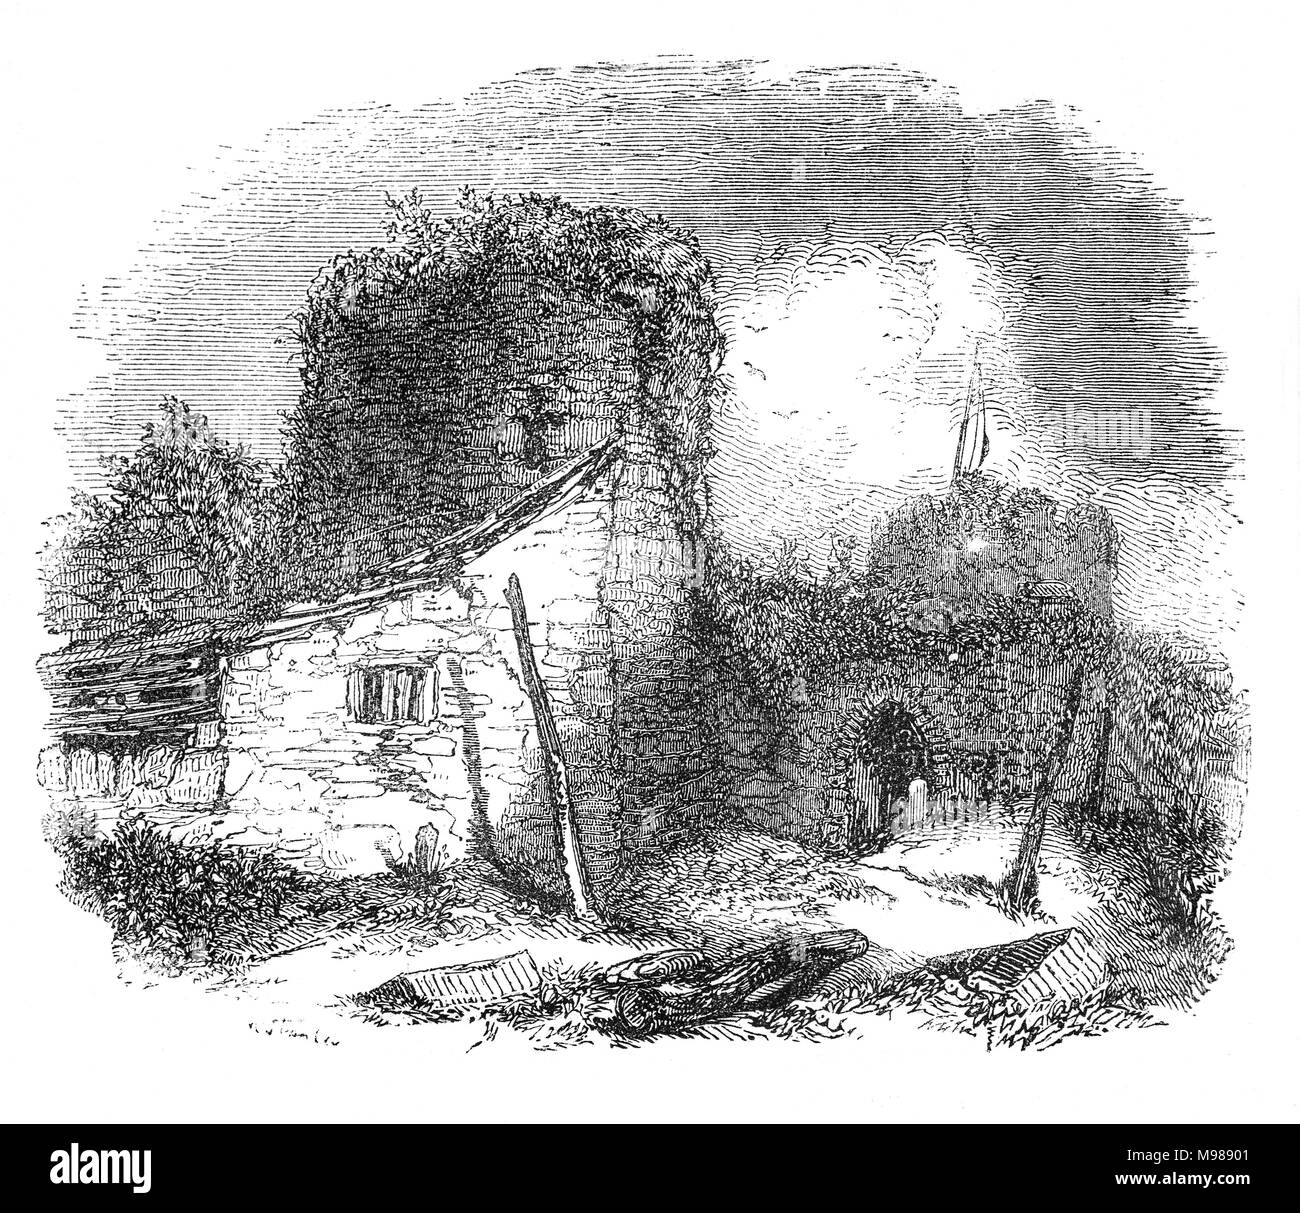 Conwy aka Conway Castle ist eine mittelalterliche Festung in Conwy, an der Nordküste von Wales. Es wurde von Edward I, während seine Eroberung von Wales, zwischen 1283 und 1289. Es war, als Teil eines umfassenderen Projekts die ummauerte Stadt Conwy zu erstellen und im Laufe der nächsten Jahrhunderte gebaut, das Schloss spielte eine wichtige Rolle in mehreren Kriegen. Es widerstanden die Belagerung von Madog ap Llywelyn im Winter 1294-95, fungierte als temporären Zufluchtsort für Richard II. im Jahr 1399 und war für mehrere Monate durch Truppen Owain Glyndŵr im Jahr 1401 statt. Stockfoto